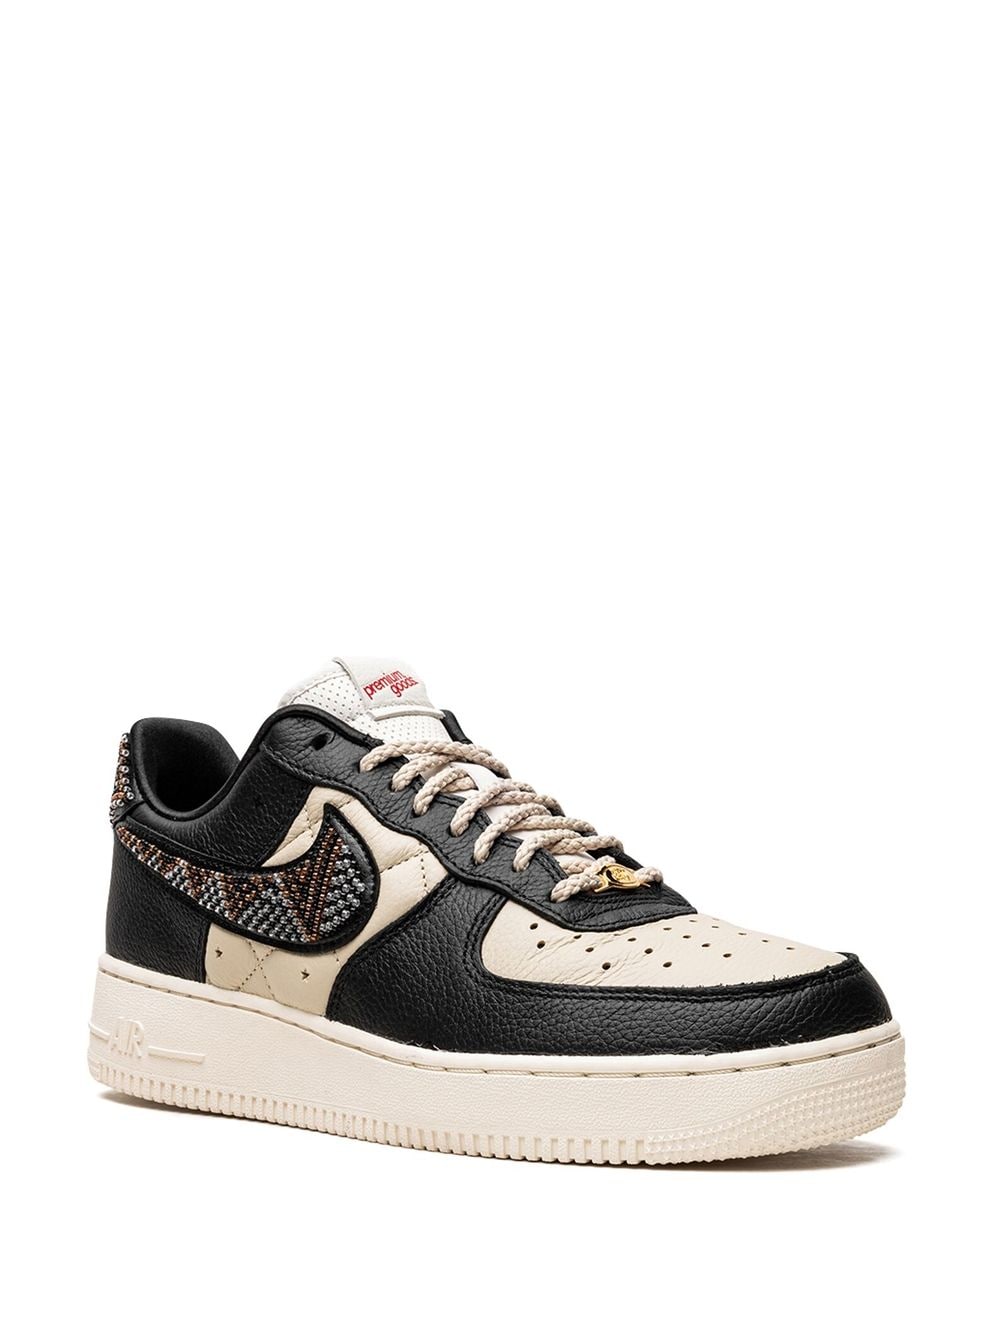 Shop Jordan X Premium Goods Air Force 1 Sp "the Sophia" Sneakers In Black